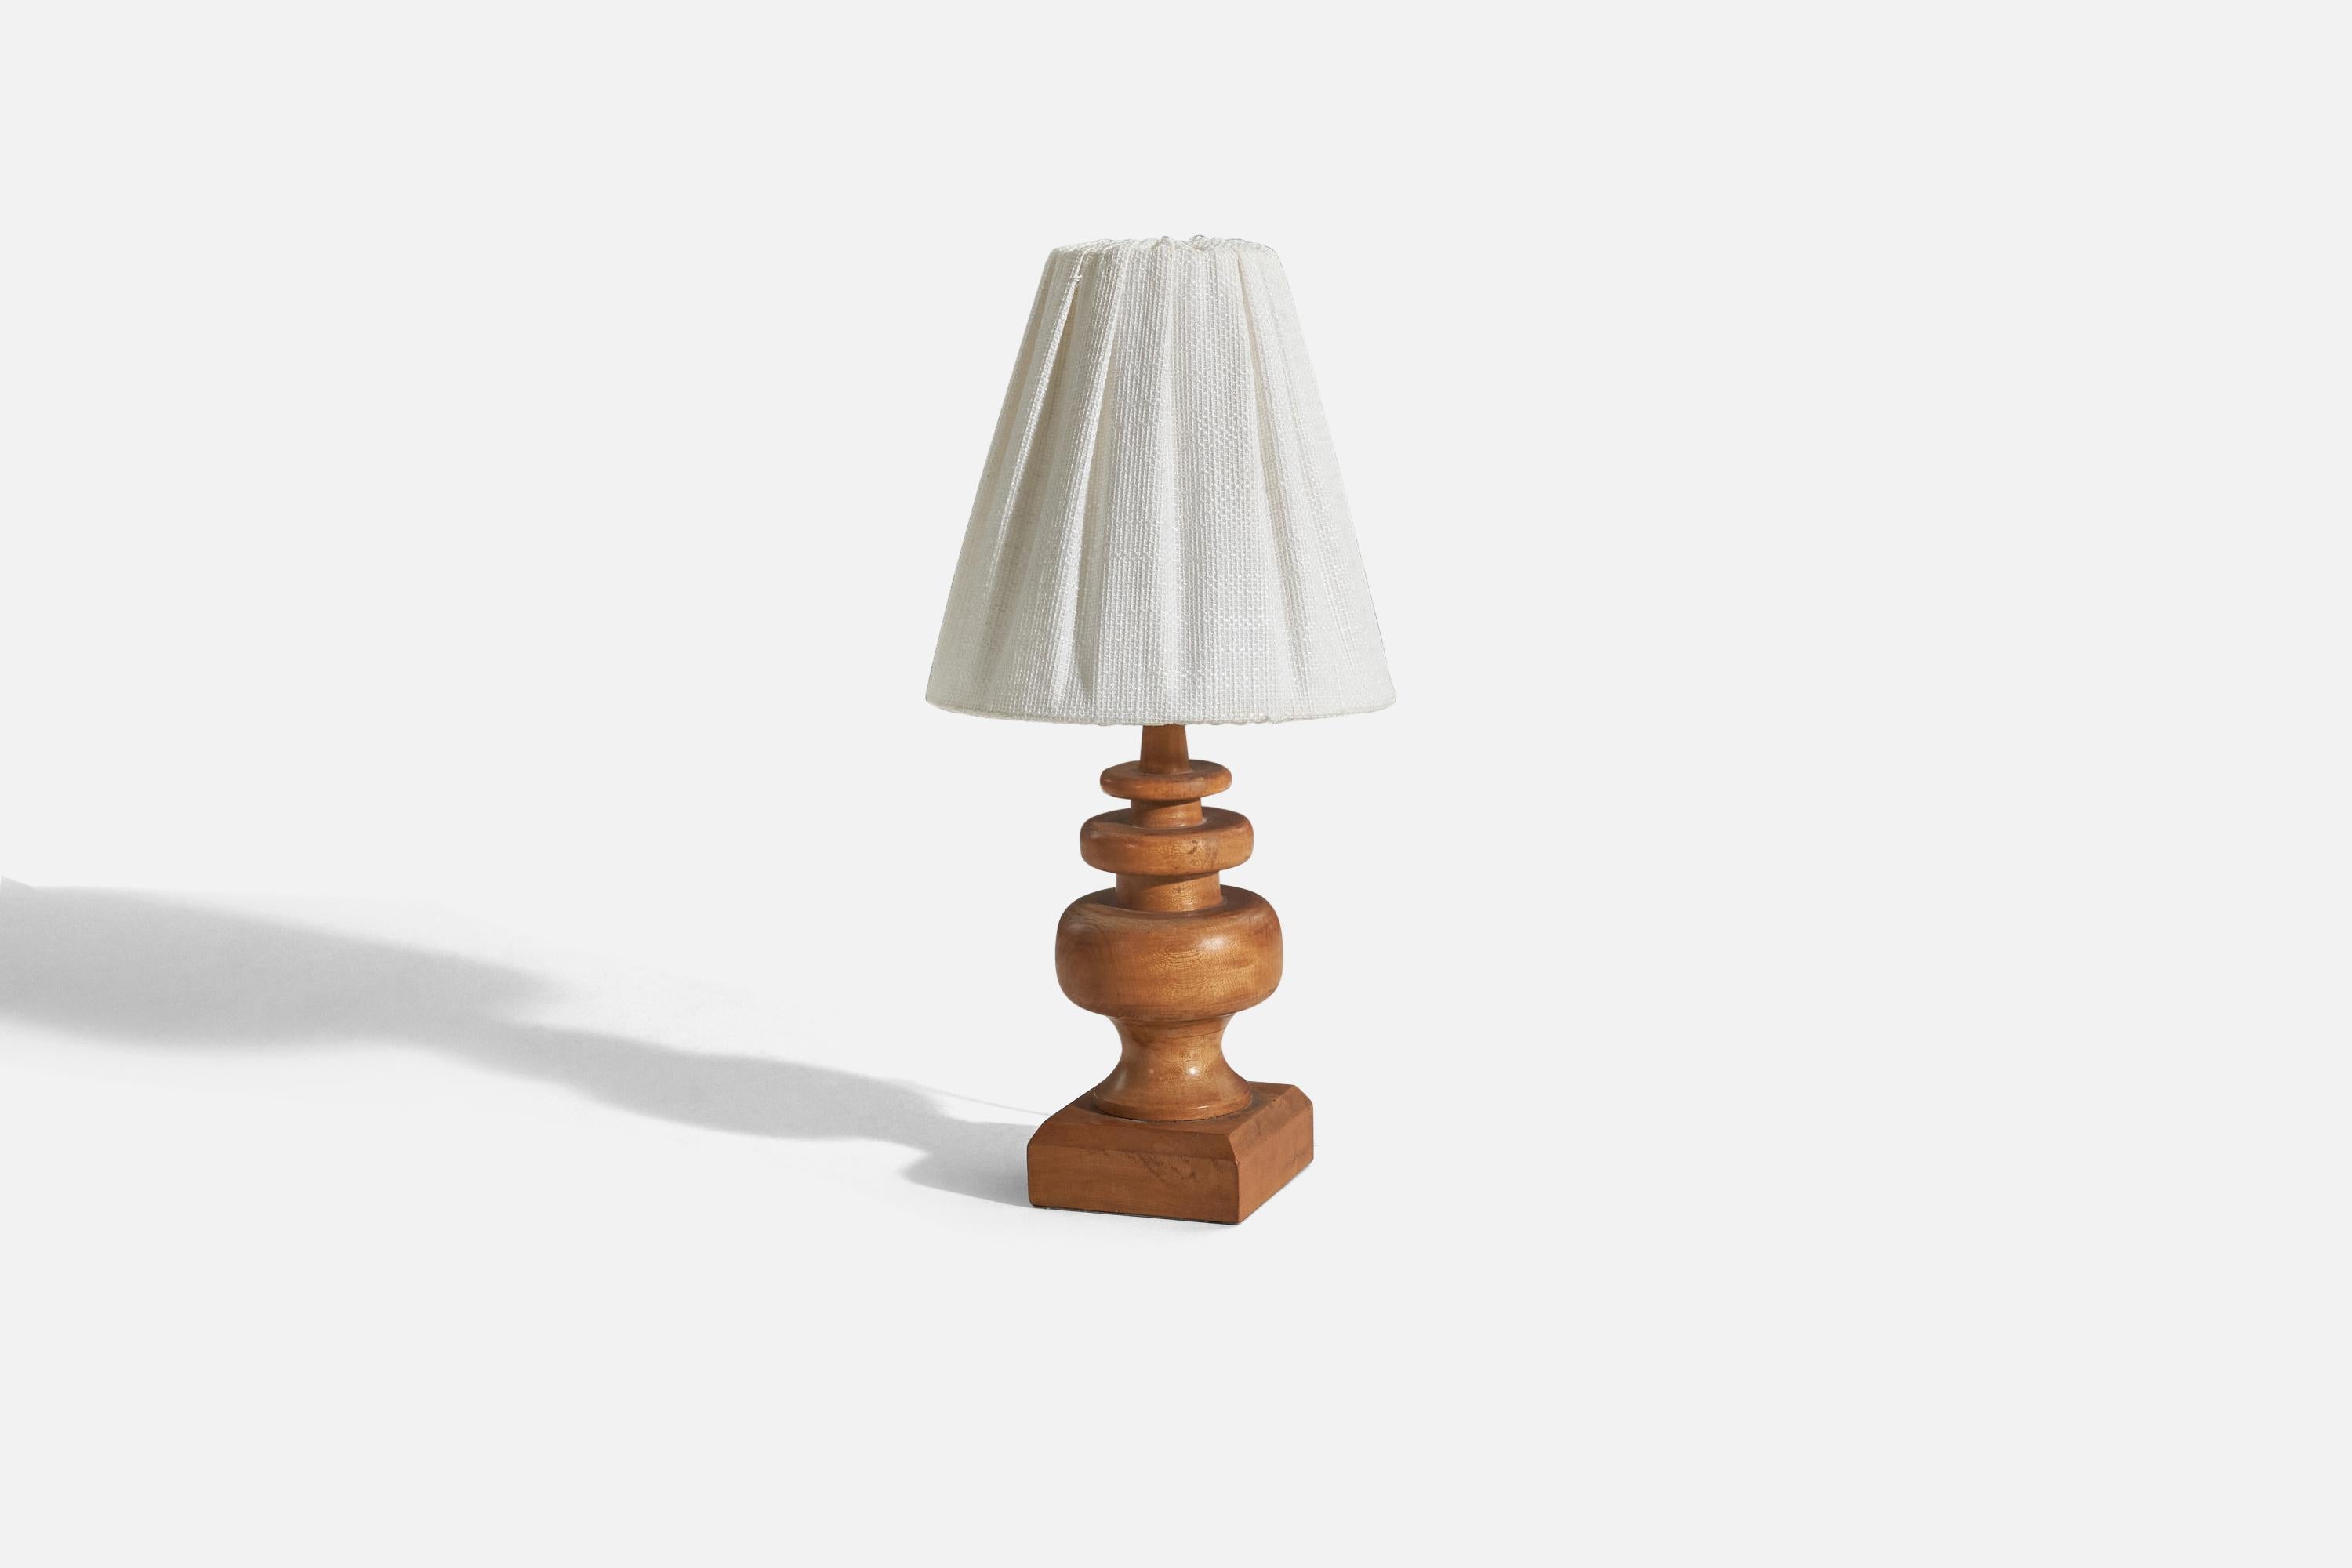 Lampe de table en bois et tissu conçue et produite aux États-Unis, vers les années 1950. 

Vendu avec abat-jour. 
Dimensions de la lampe (pouces) : 11.18 x 3,87 x 4 (Hauteur x Largeur x Profondeur)
Dimensions de l'abat-jour (pouces) : 3.75 x 8 x